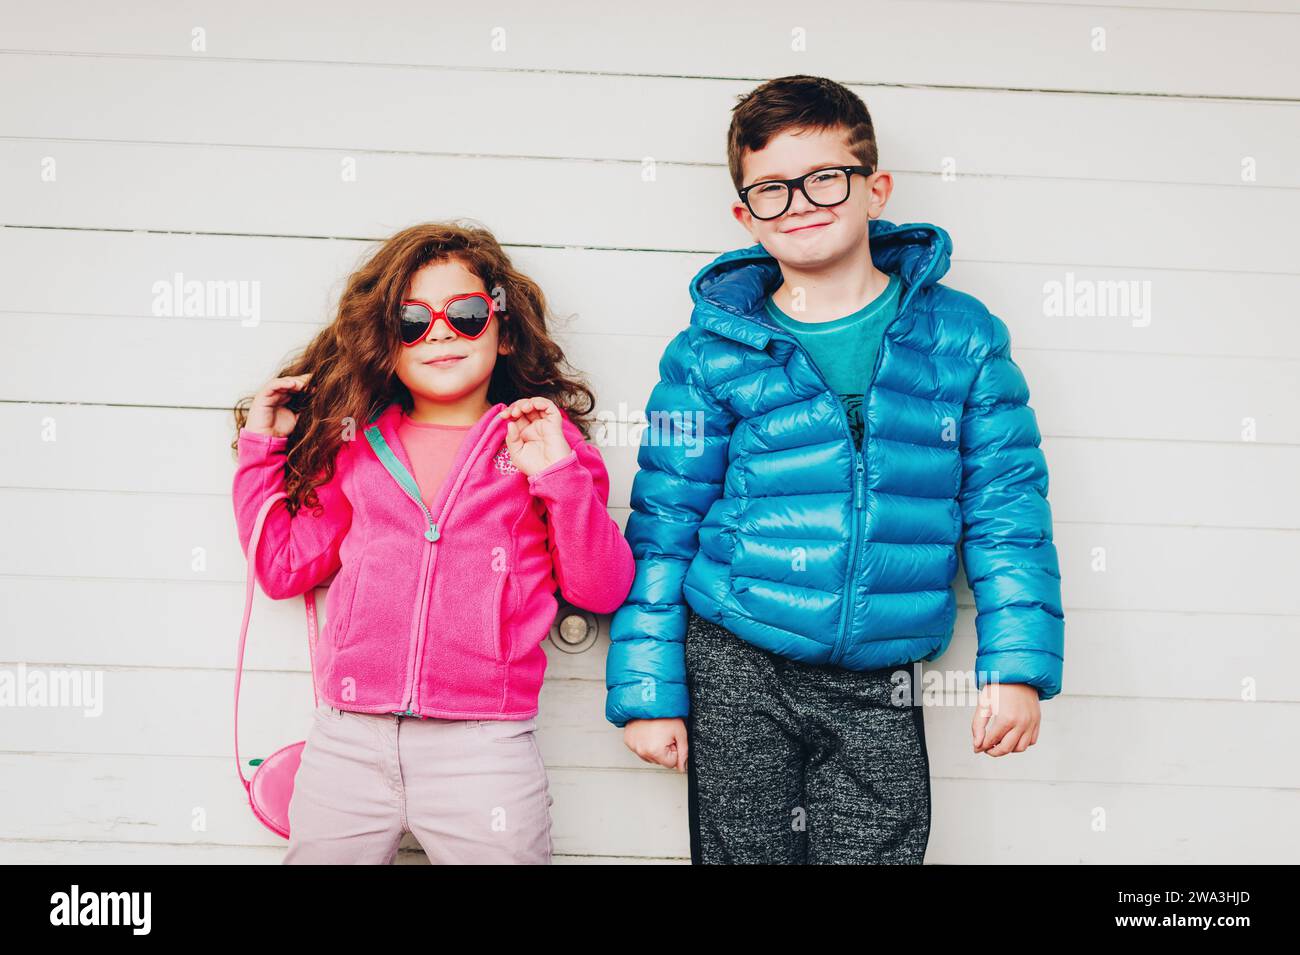 Das niedliche Kleinkind Mädchen und ihr großer Bruder posieren draußen vor weißem Holzhintergrund, tragen eine rosafarbene Fleecejacke und einen blauen wattierten Mantel Stockfoto